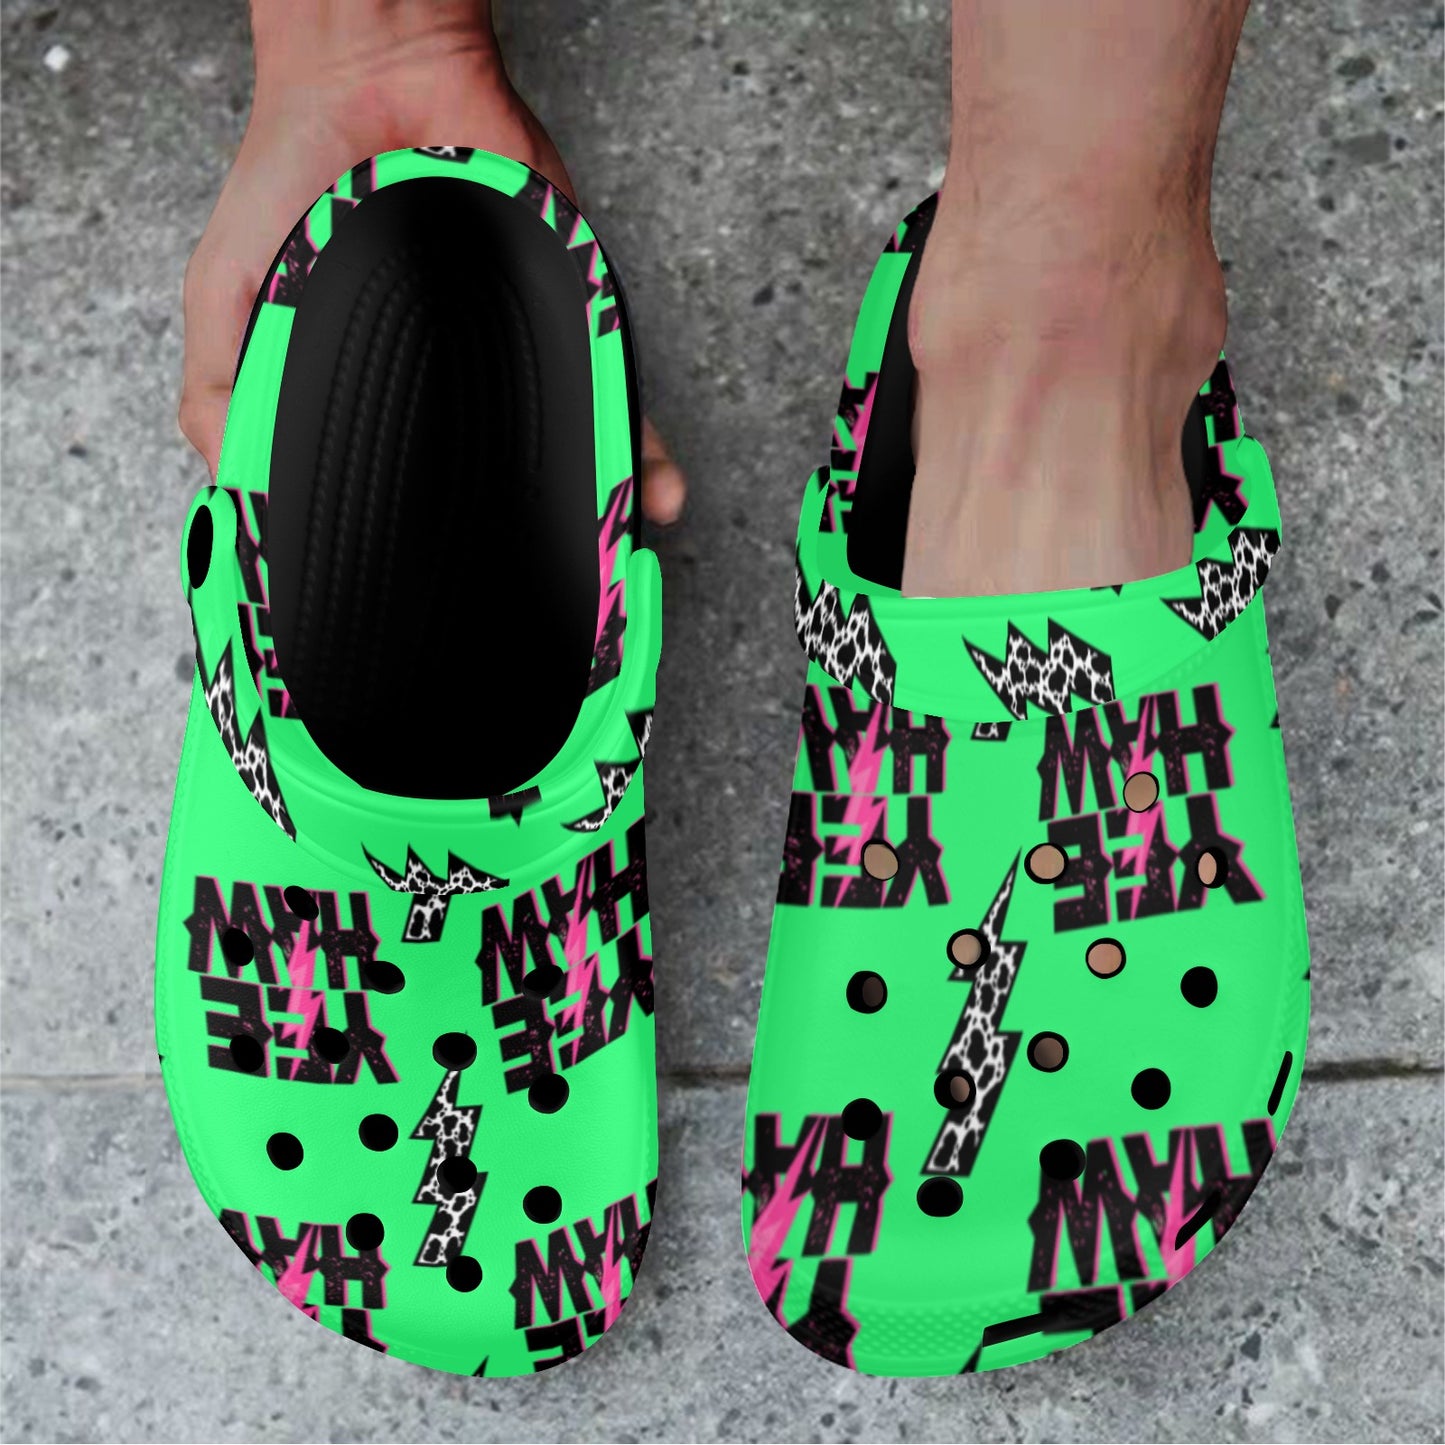 Neon Yeehaw Clog Shoes